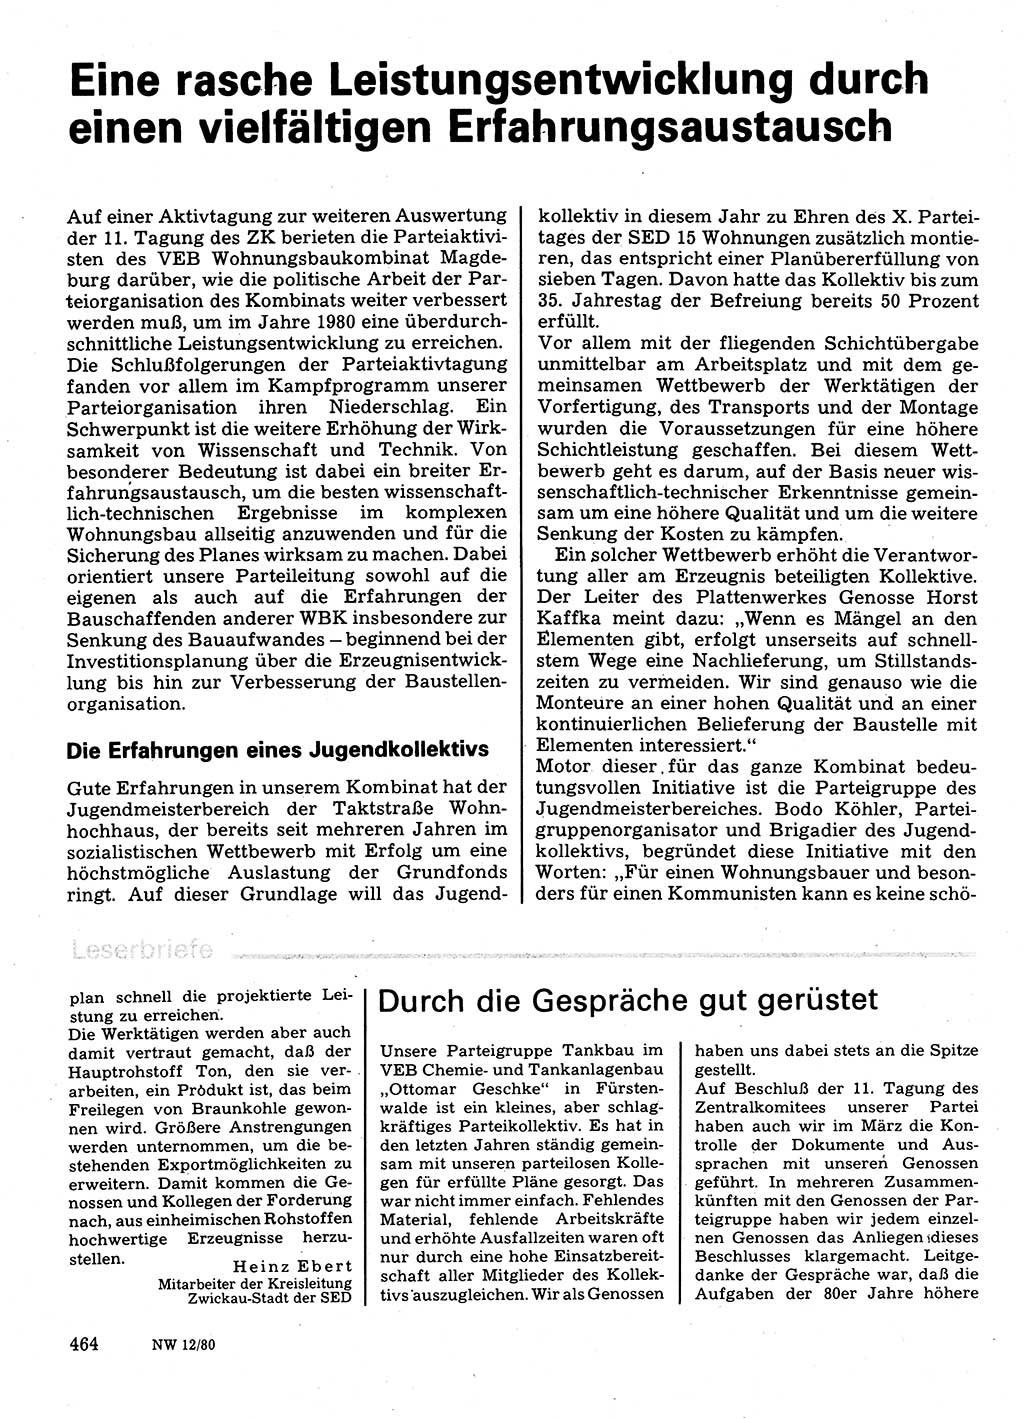 Neuer Weg (NW), Organ des Zentralkomitees (ZK) der SED (Sozialistische Einheitspartei Deutschlands) für Fragen des Parteilebens, 35. Jahrgang [Deutsche Demokratische Republik (DDR)] 1980, Seite 464 (NW ZK SED DDR 1980, S. 464)